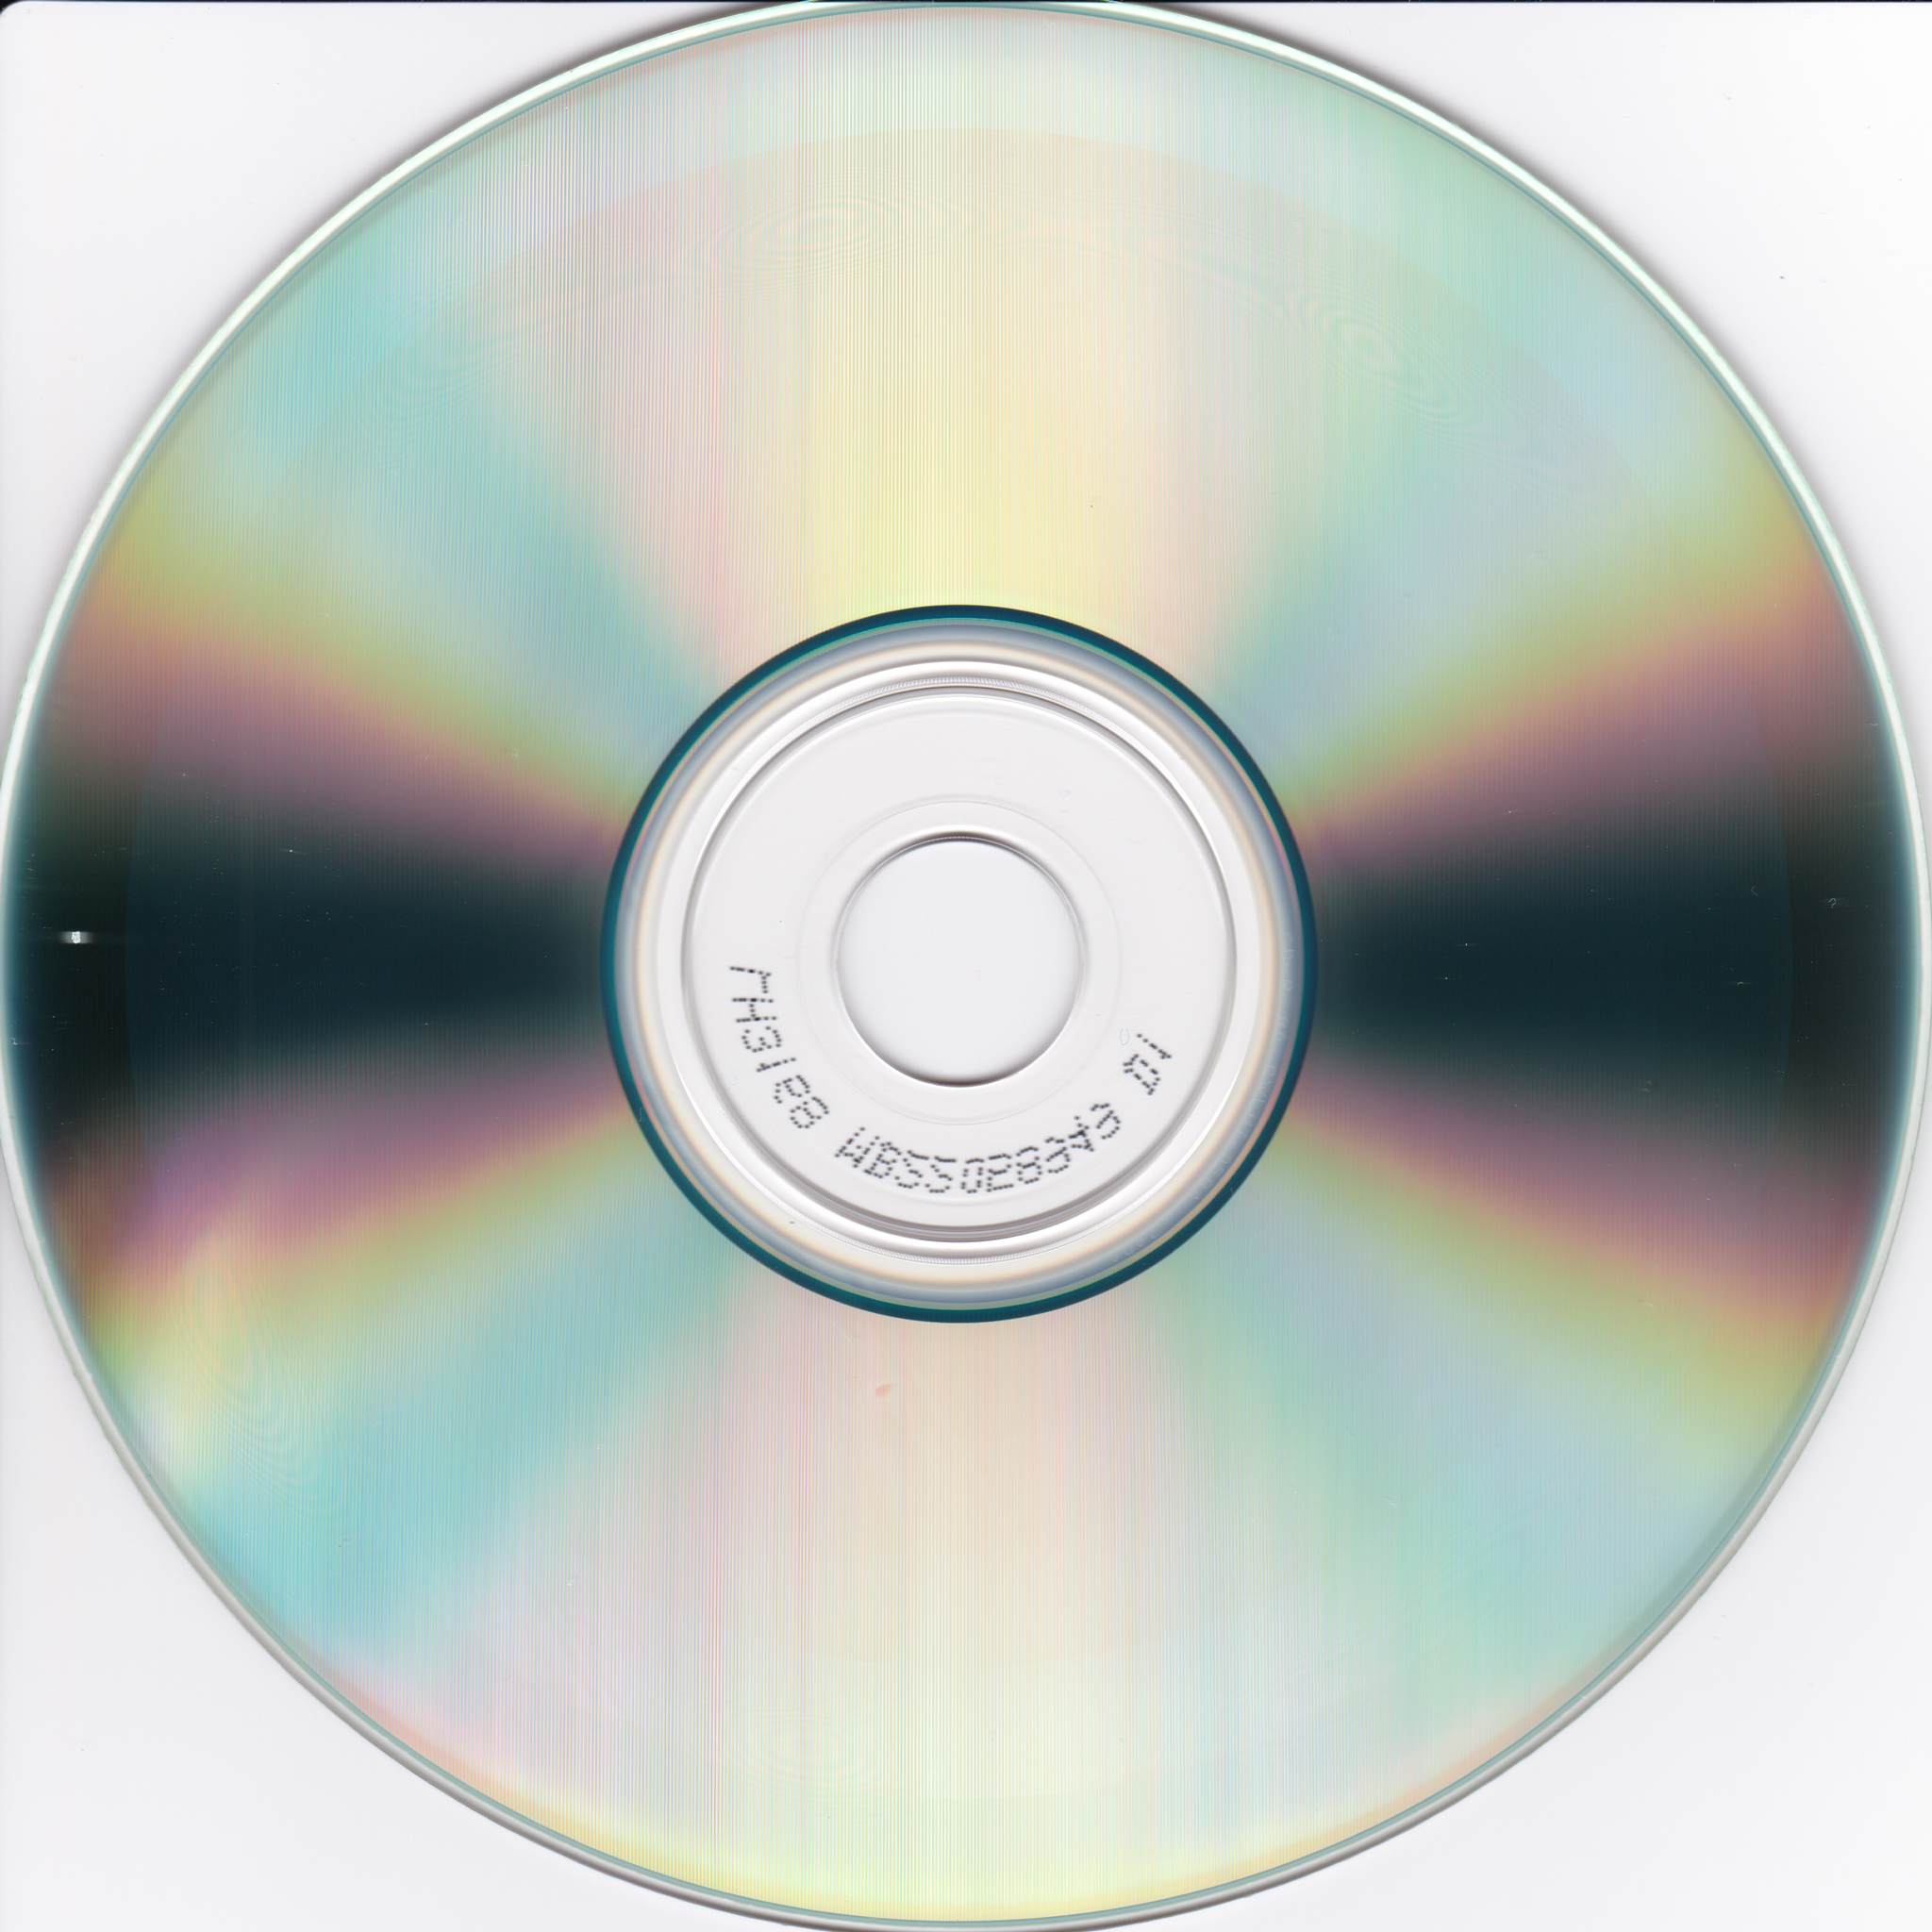 DVD logo pattern : r/oddlysatisfying